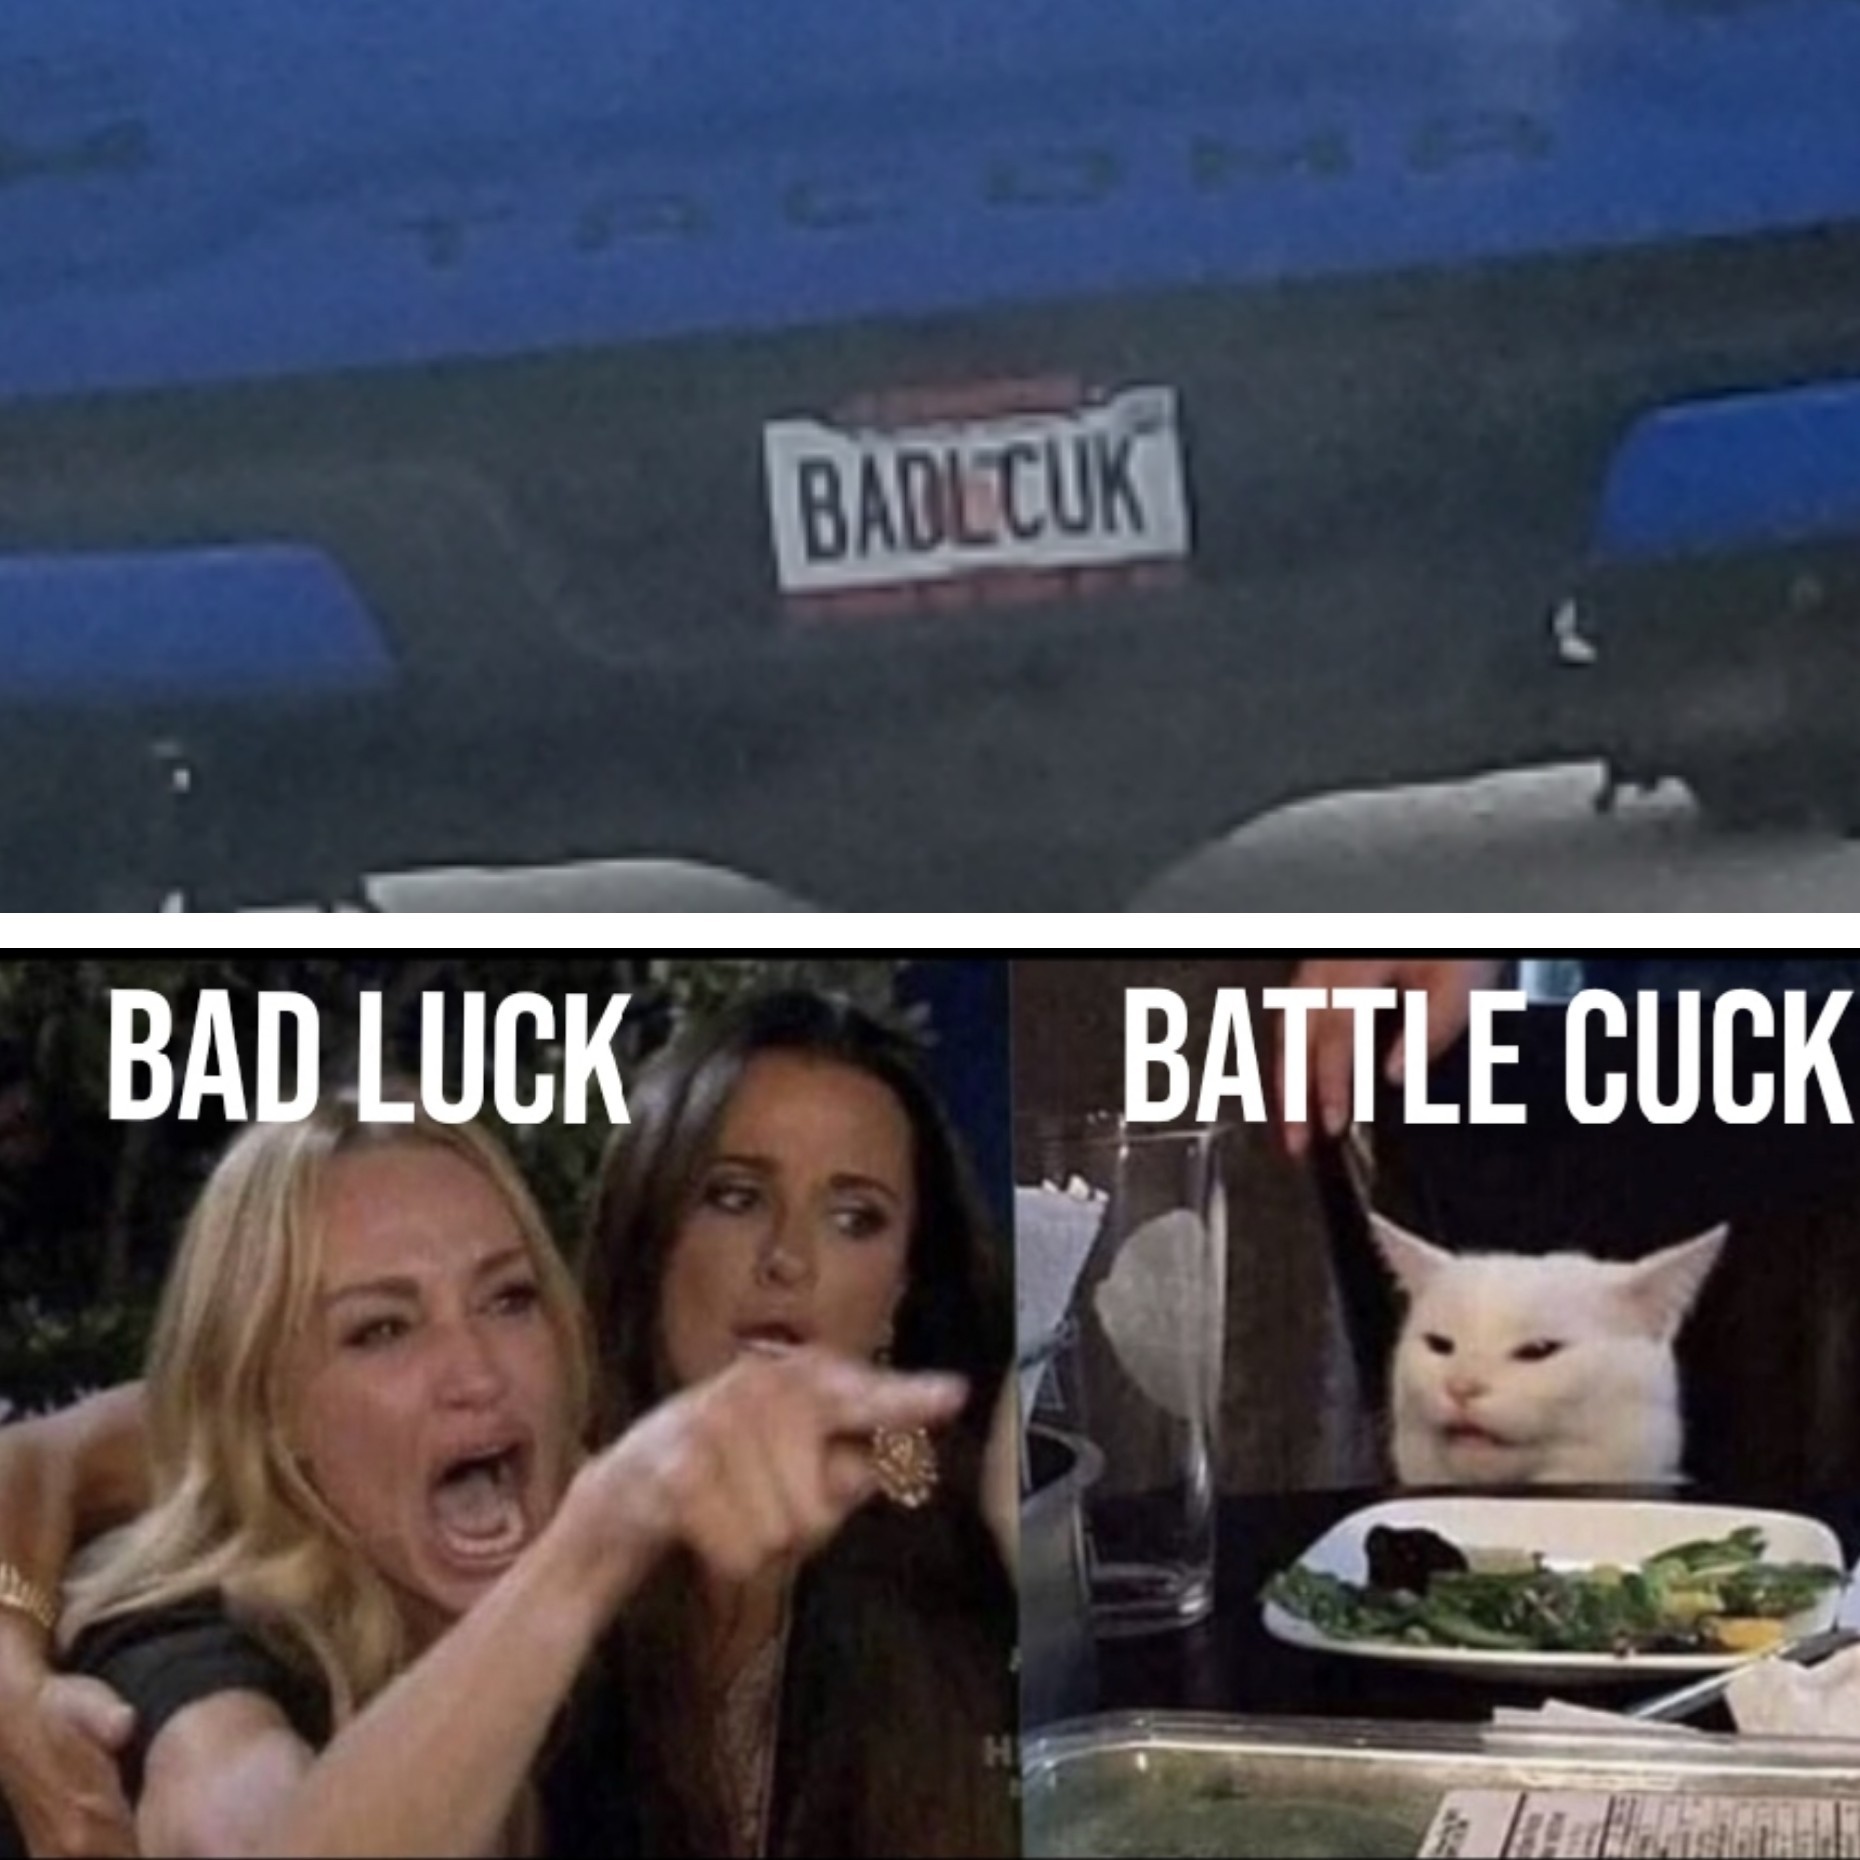 Battle cuck - meme